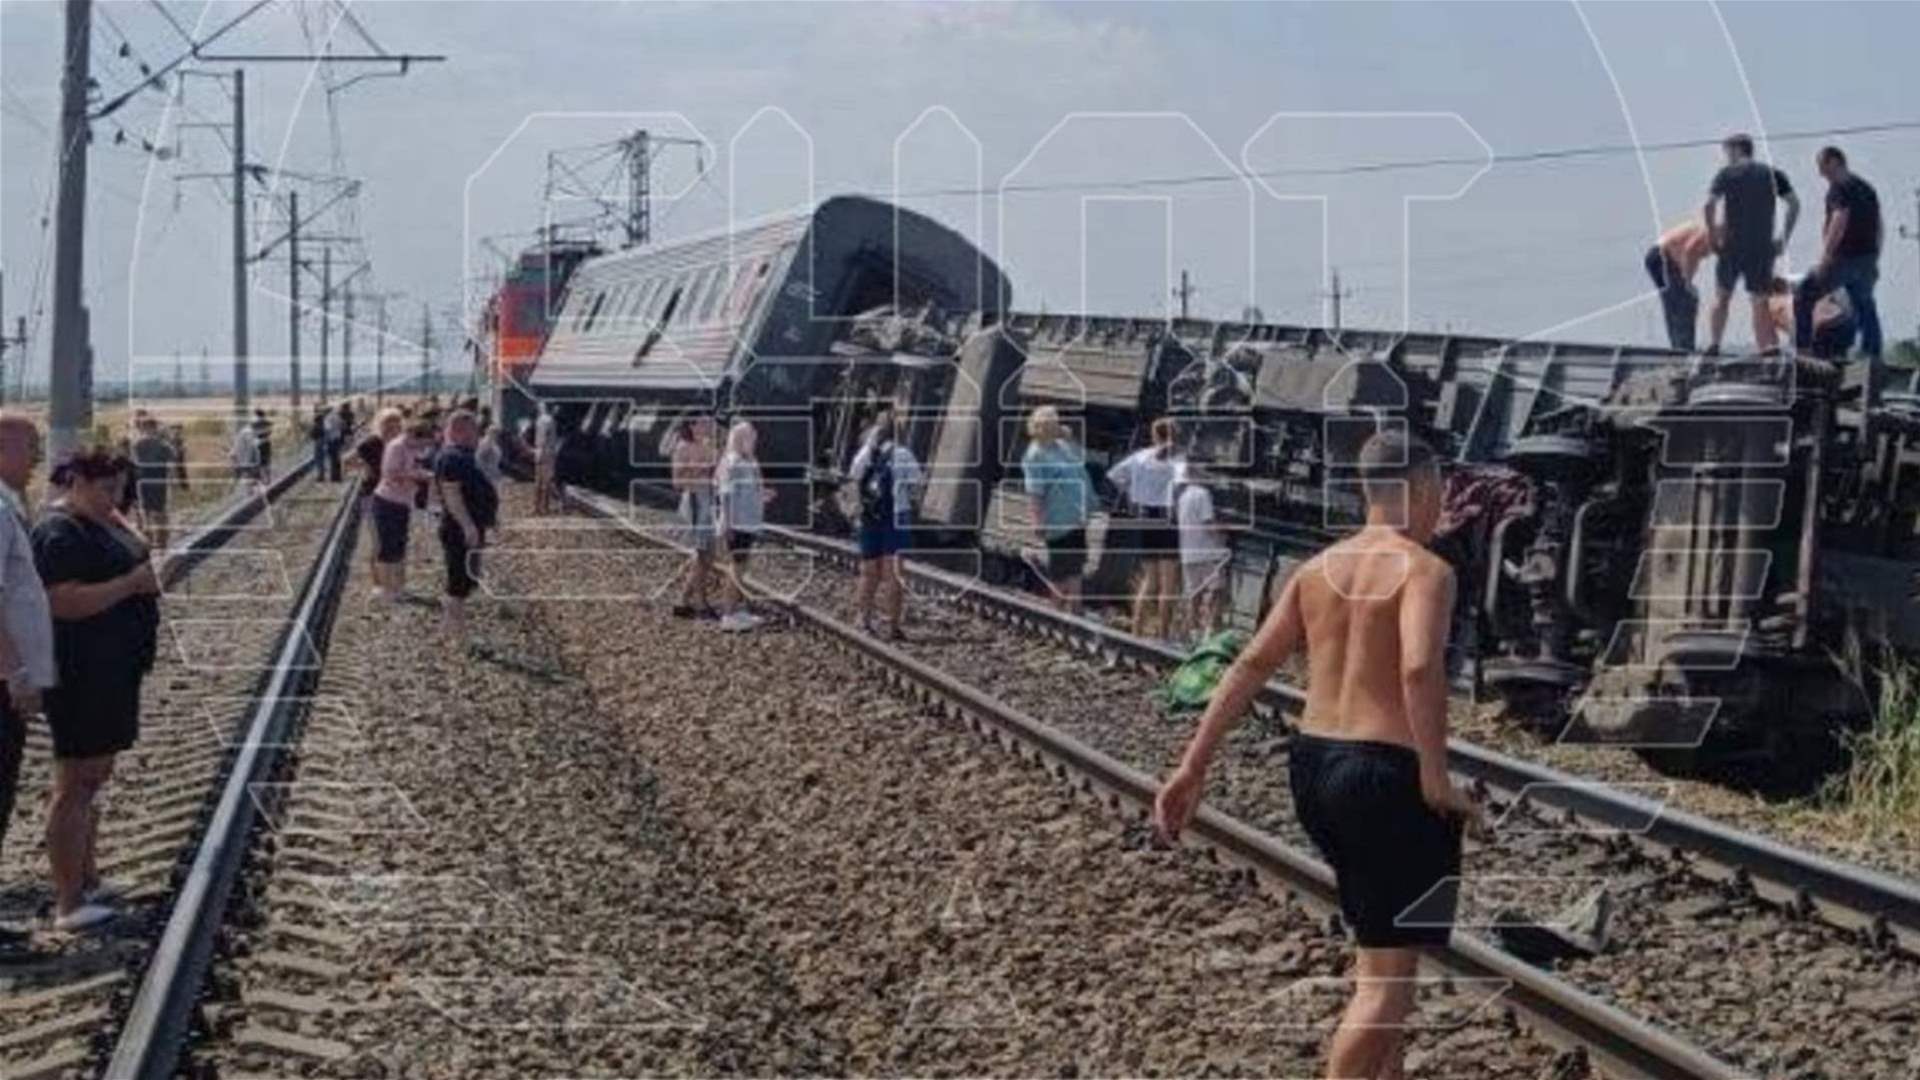 اصابات بعد خروج قطار عن القضبان في فولغوغراد في روسيا